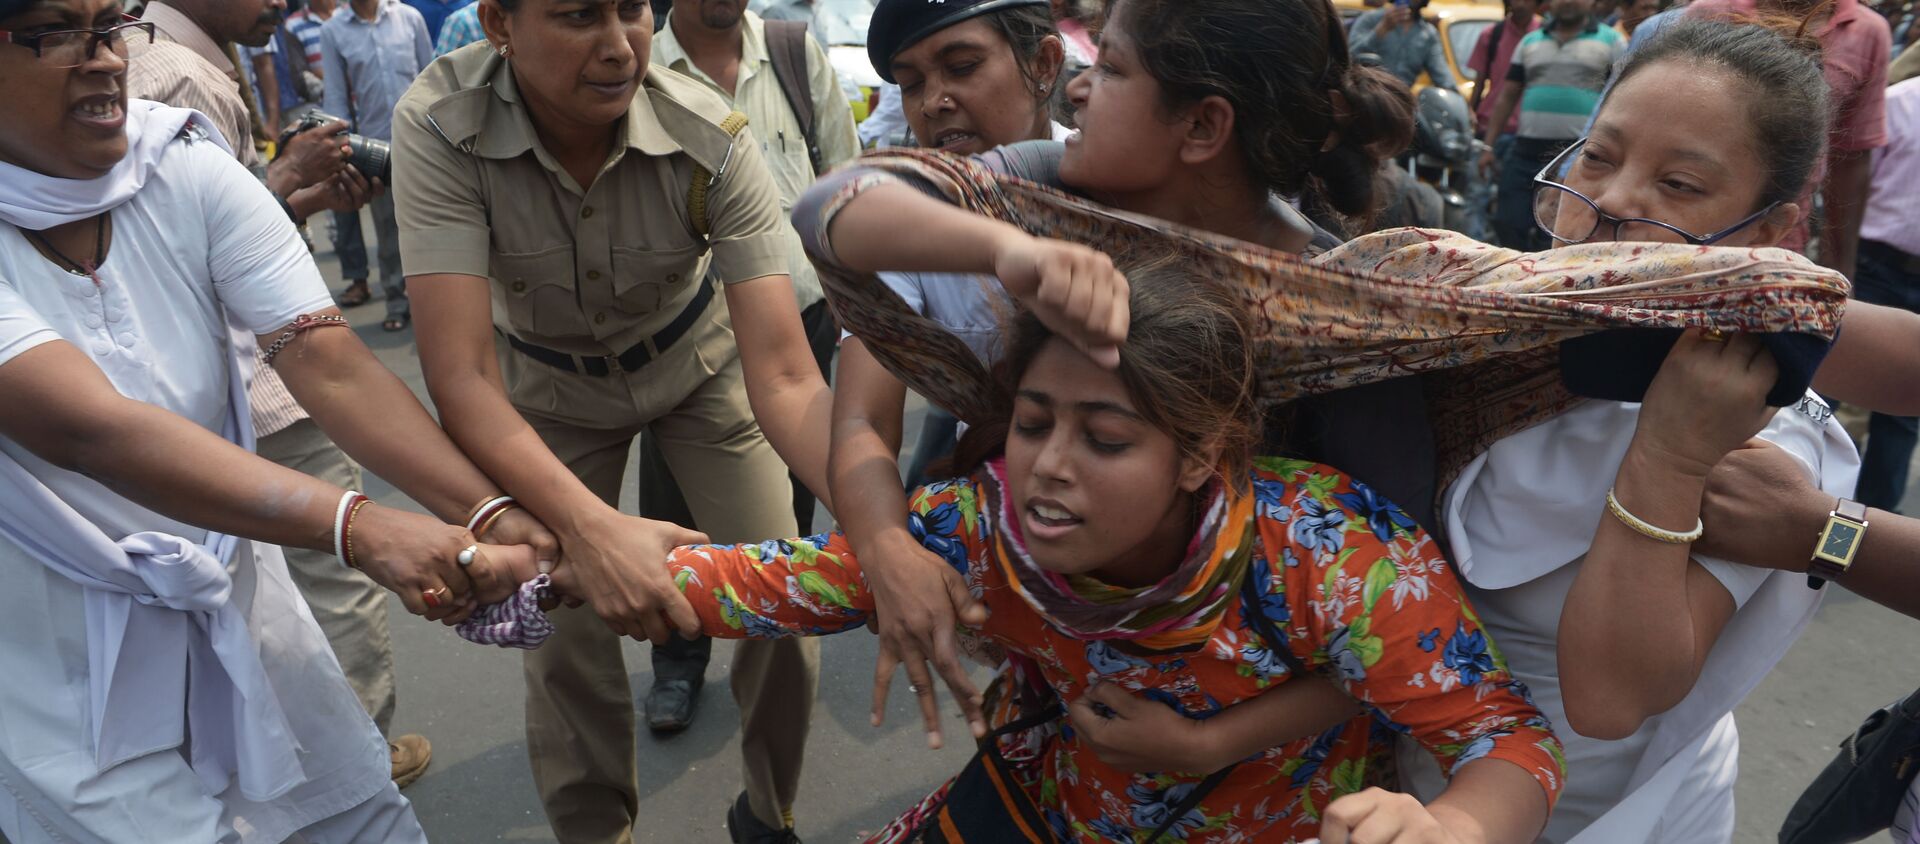 الشرطة الهندية تعتقل نشطاء مركز الوحدة الاجتماعية، وذلك أنهم يسدون الطريق خلال احتجاجهم ضد جماعة اغتصاب في كالكوتا، الهند 31 مايو/ آيار 2016. - سبوتنيك عربي, 1920, 15.10.2016